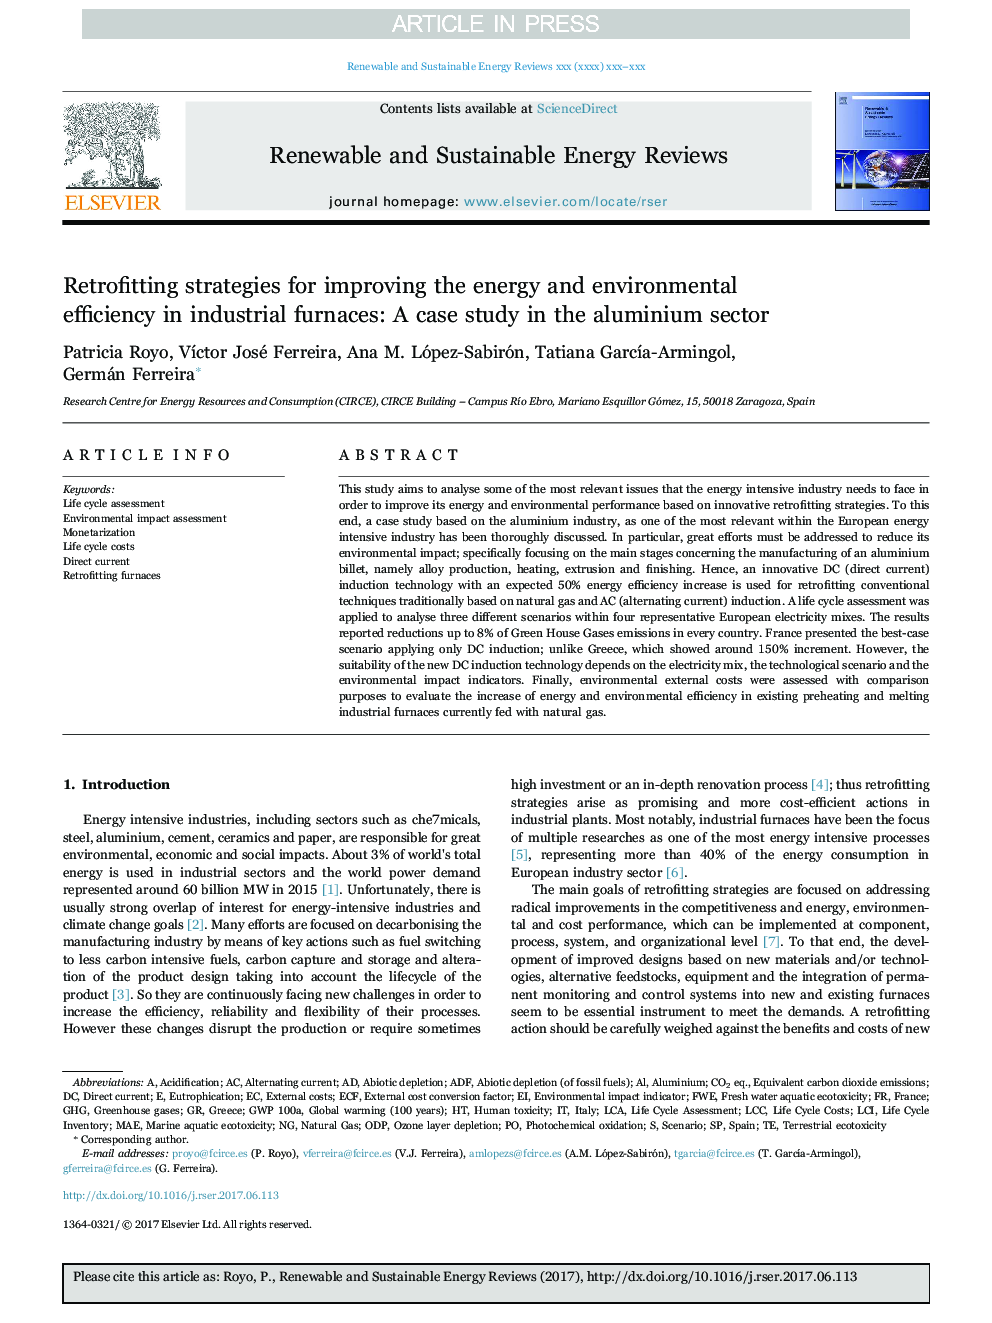 استراتژی های بازسازی برای بهبود کارایی انرژی و محیط زیست در کوره های صنعتی: مطالعه موردی در بخش آلومینیوم 